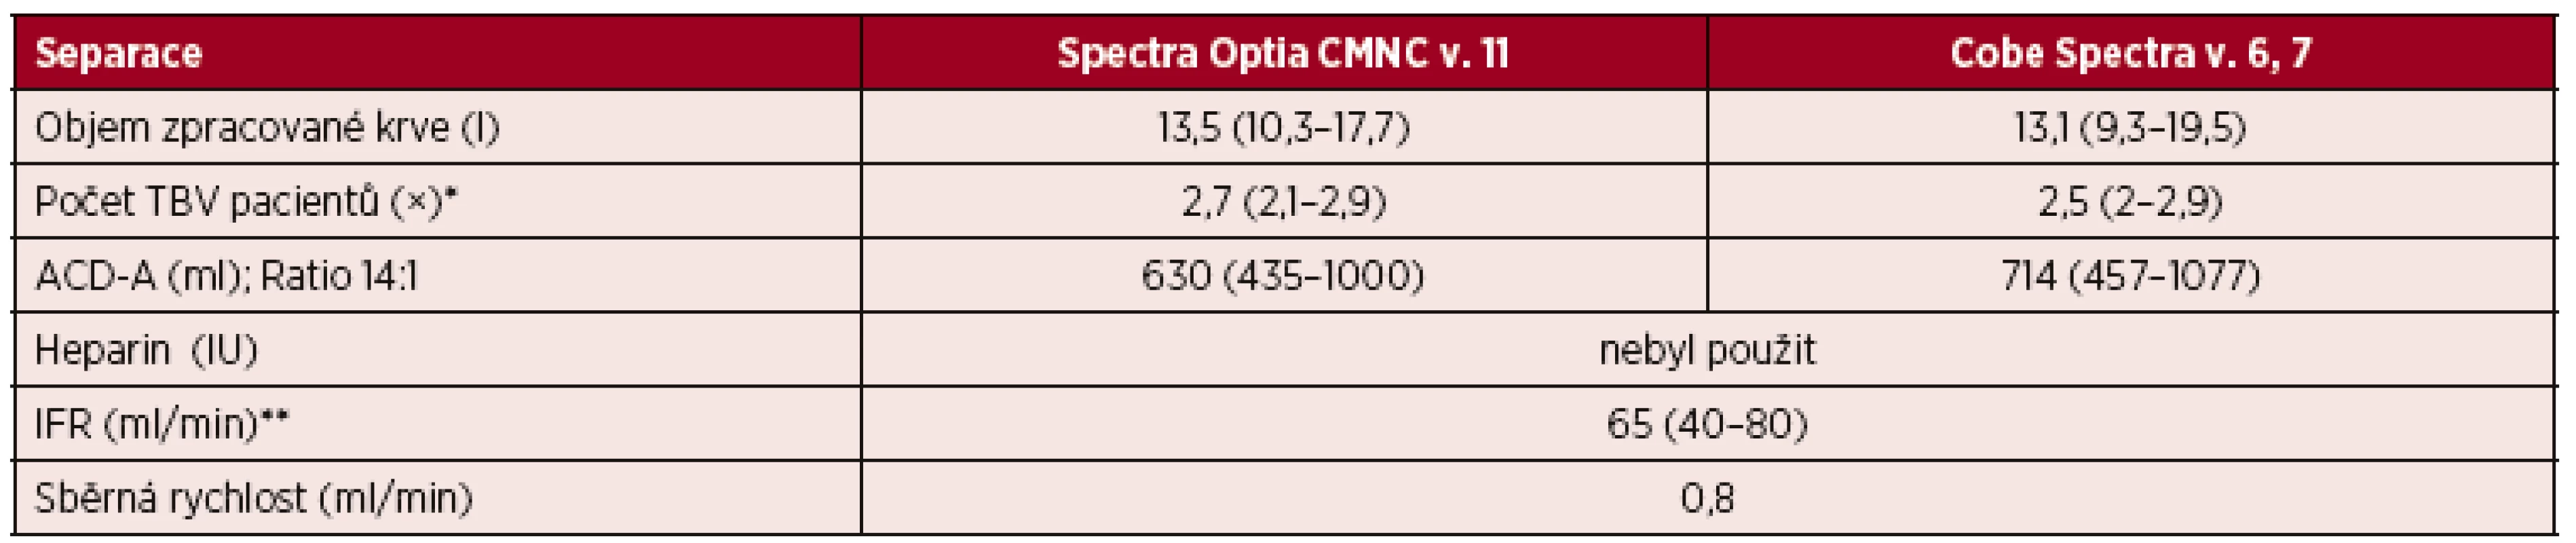 Standardní separace PBPC autologní – separační parametry CMNC Spectra Optia a Cobe Spectra